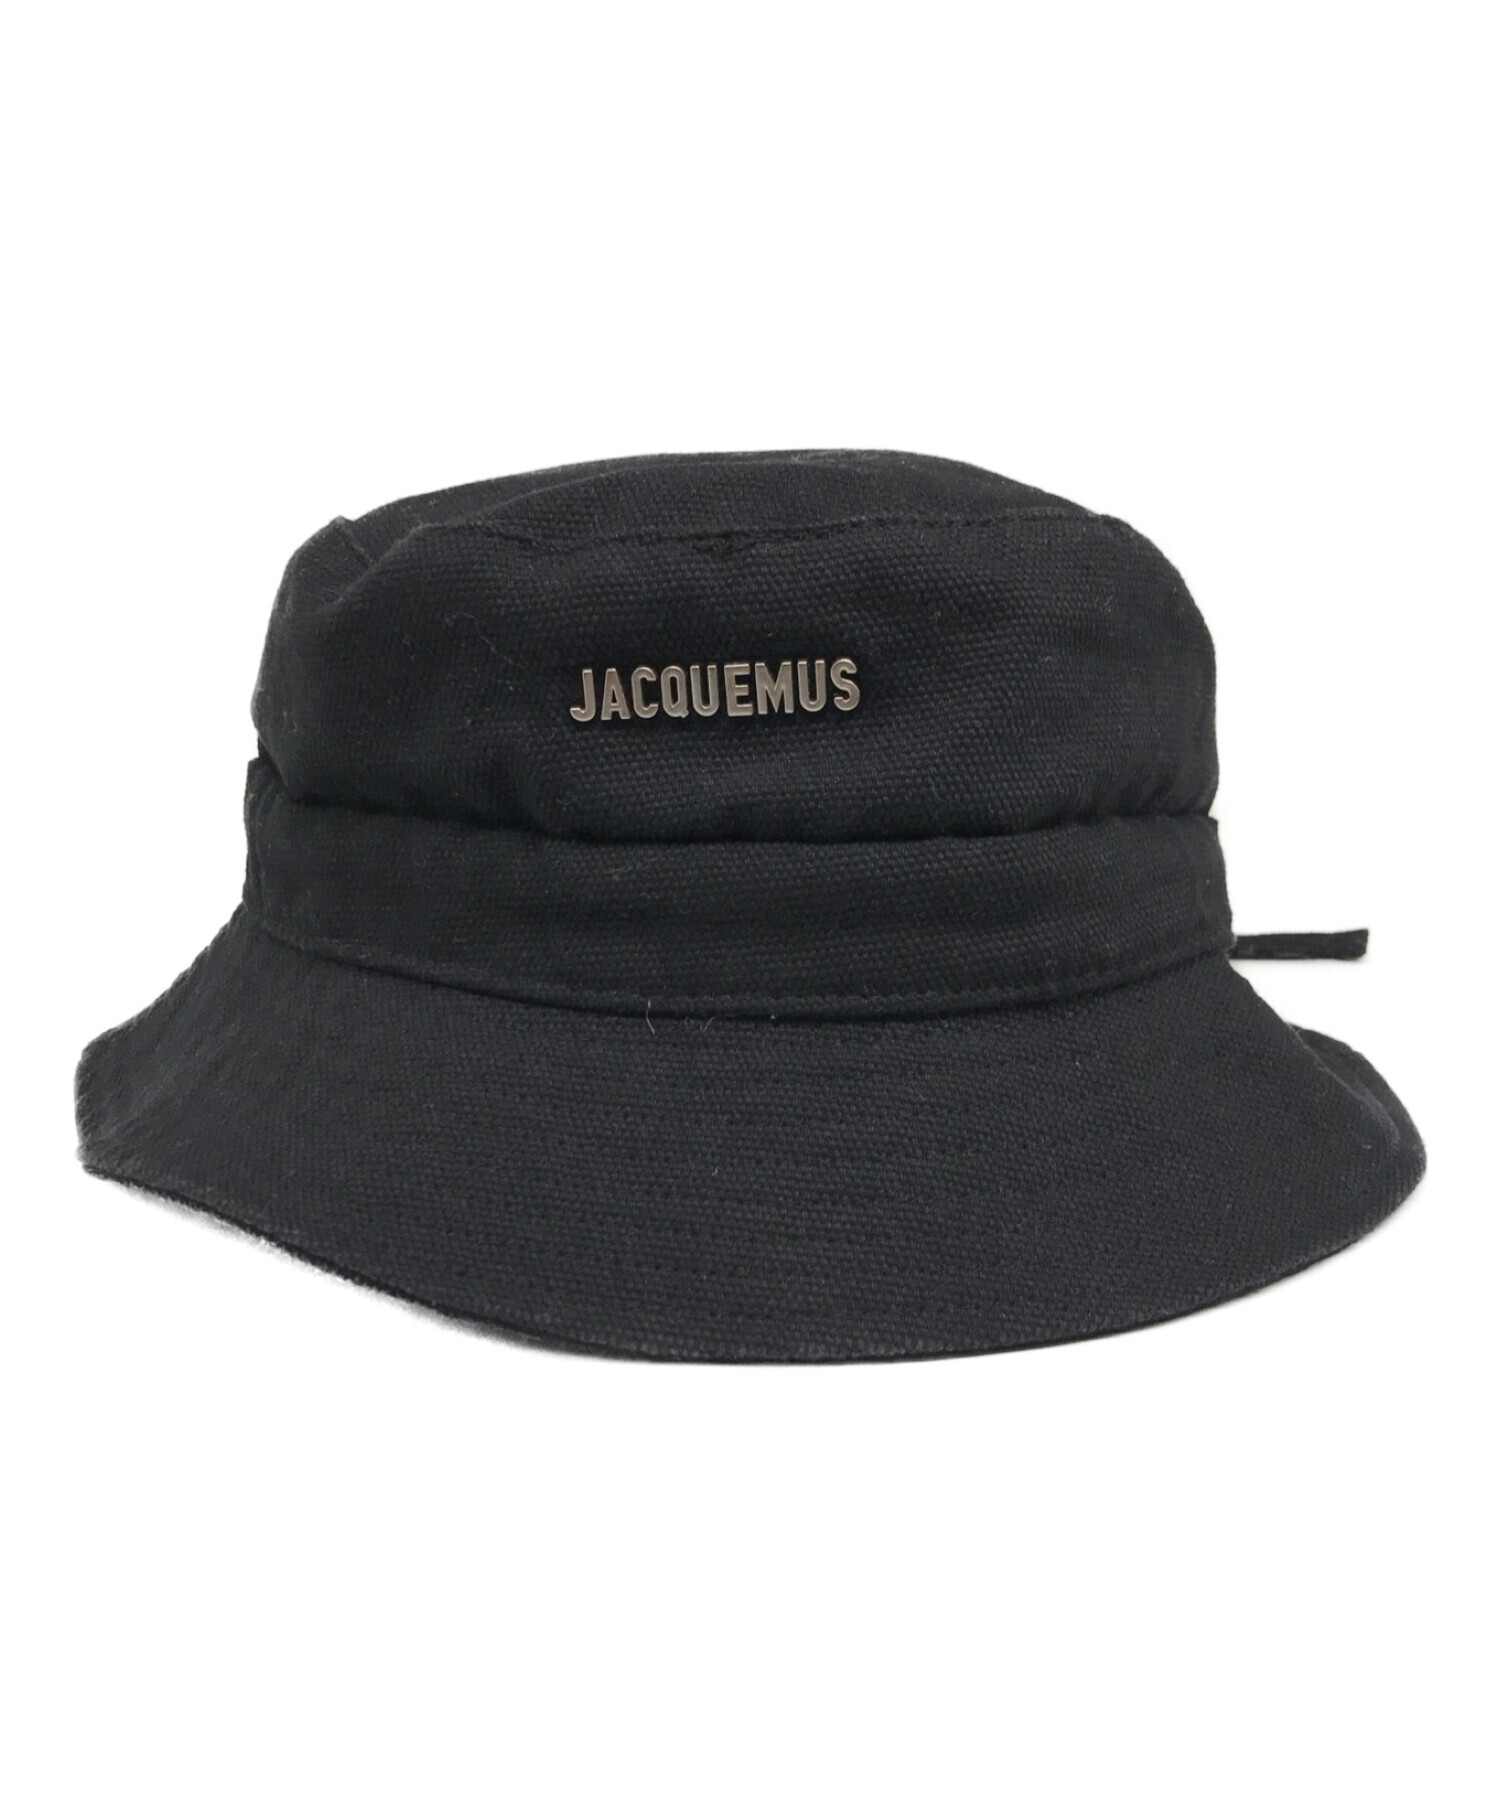 Jacquemus バケットハット サイズ60